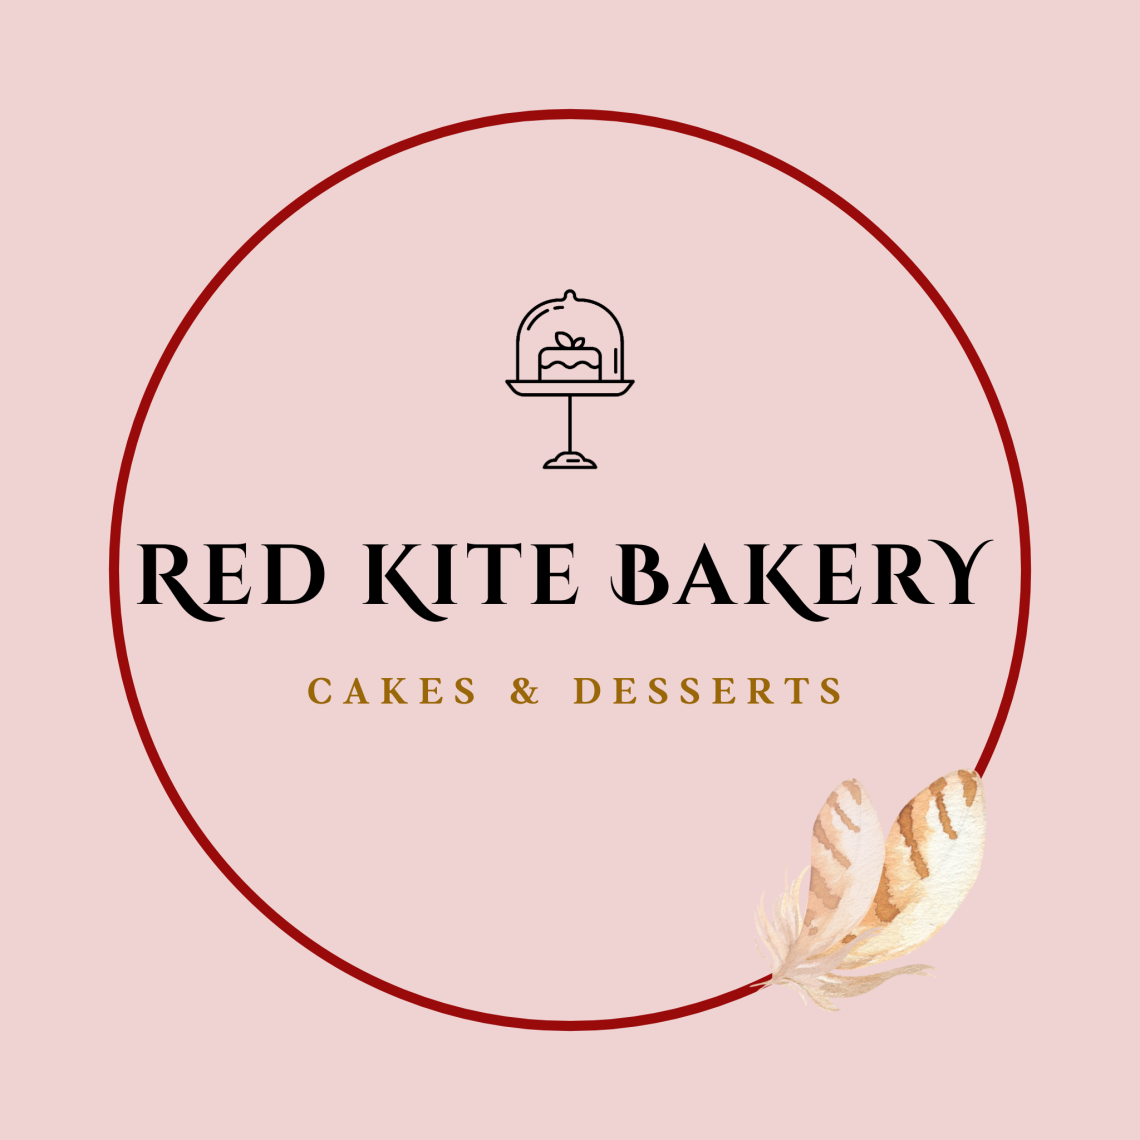 Red Kite Bakery